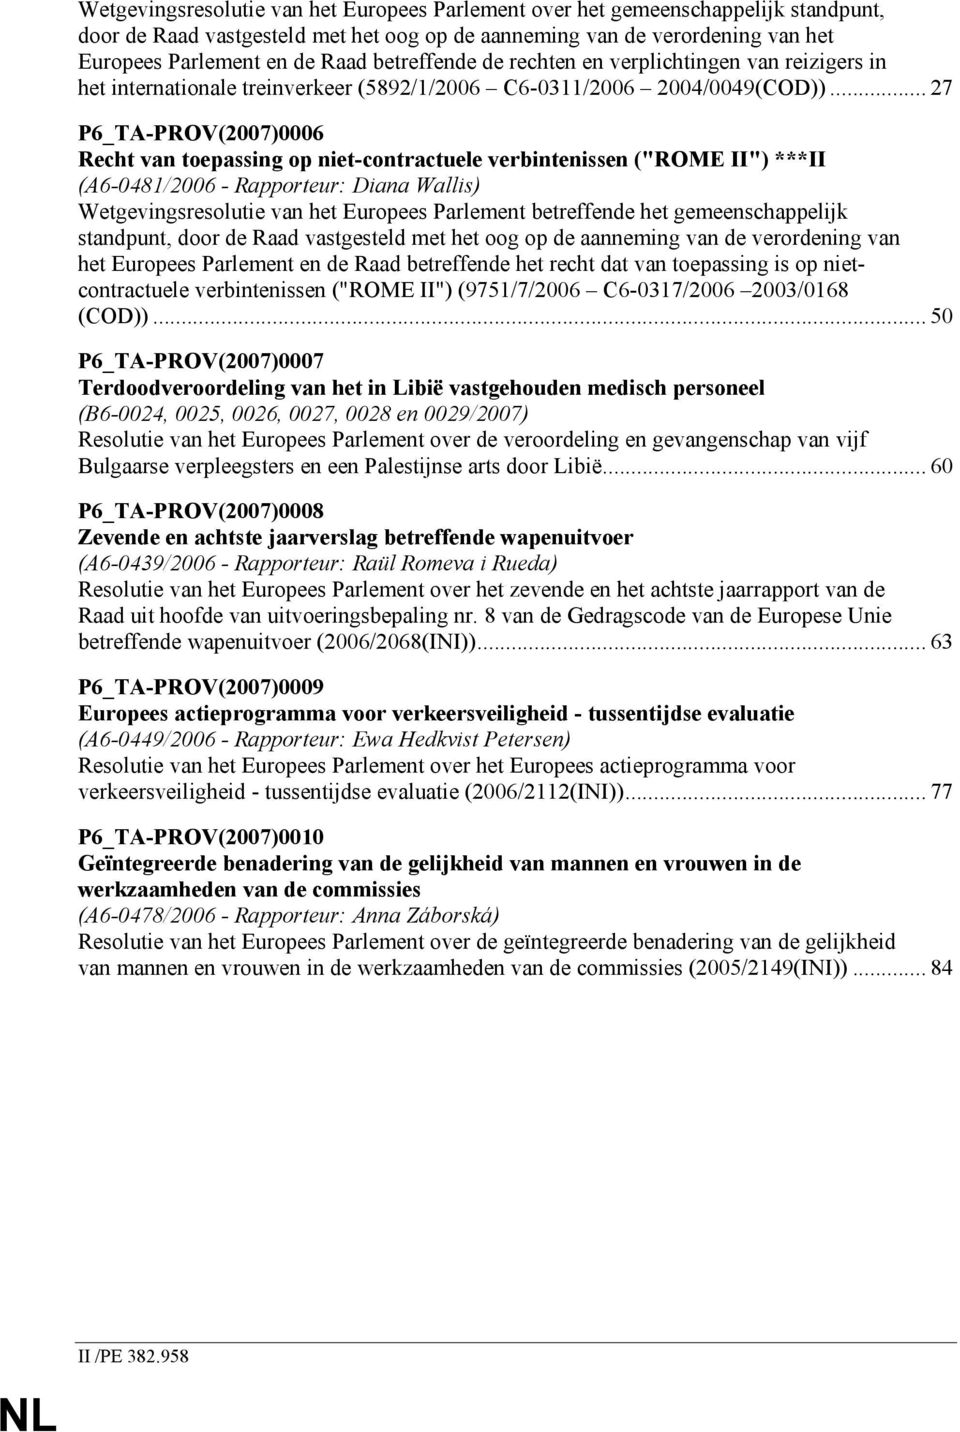 .. 27 P6_TA-PROV(2007)0006 Recht van toepassing op niet-contractuele verbintenissen ("ROME II") ***II (A6-0481/2006 - Rapporteur: Diana Wallis) Wetgevingsresolutie van het Europees Parlement